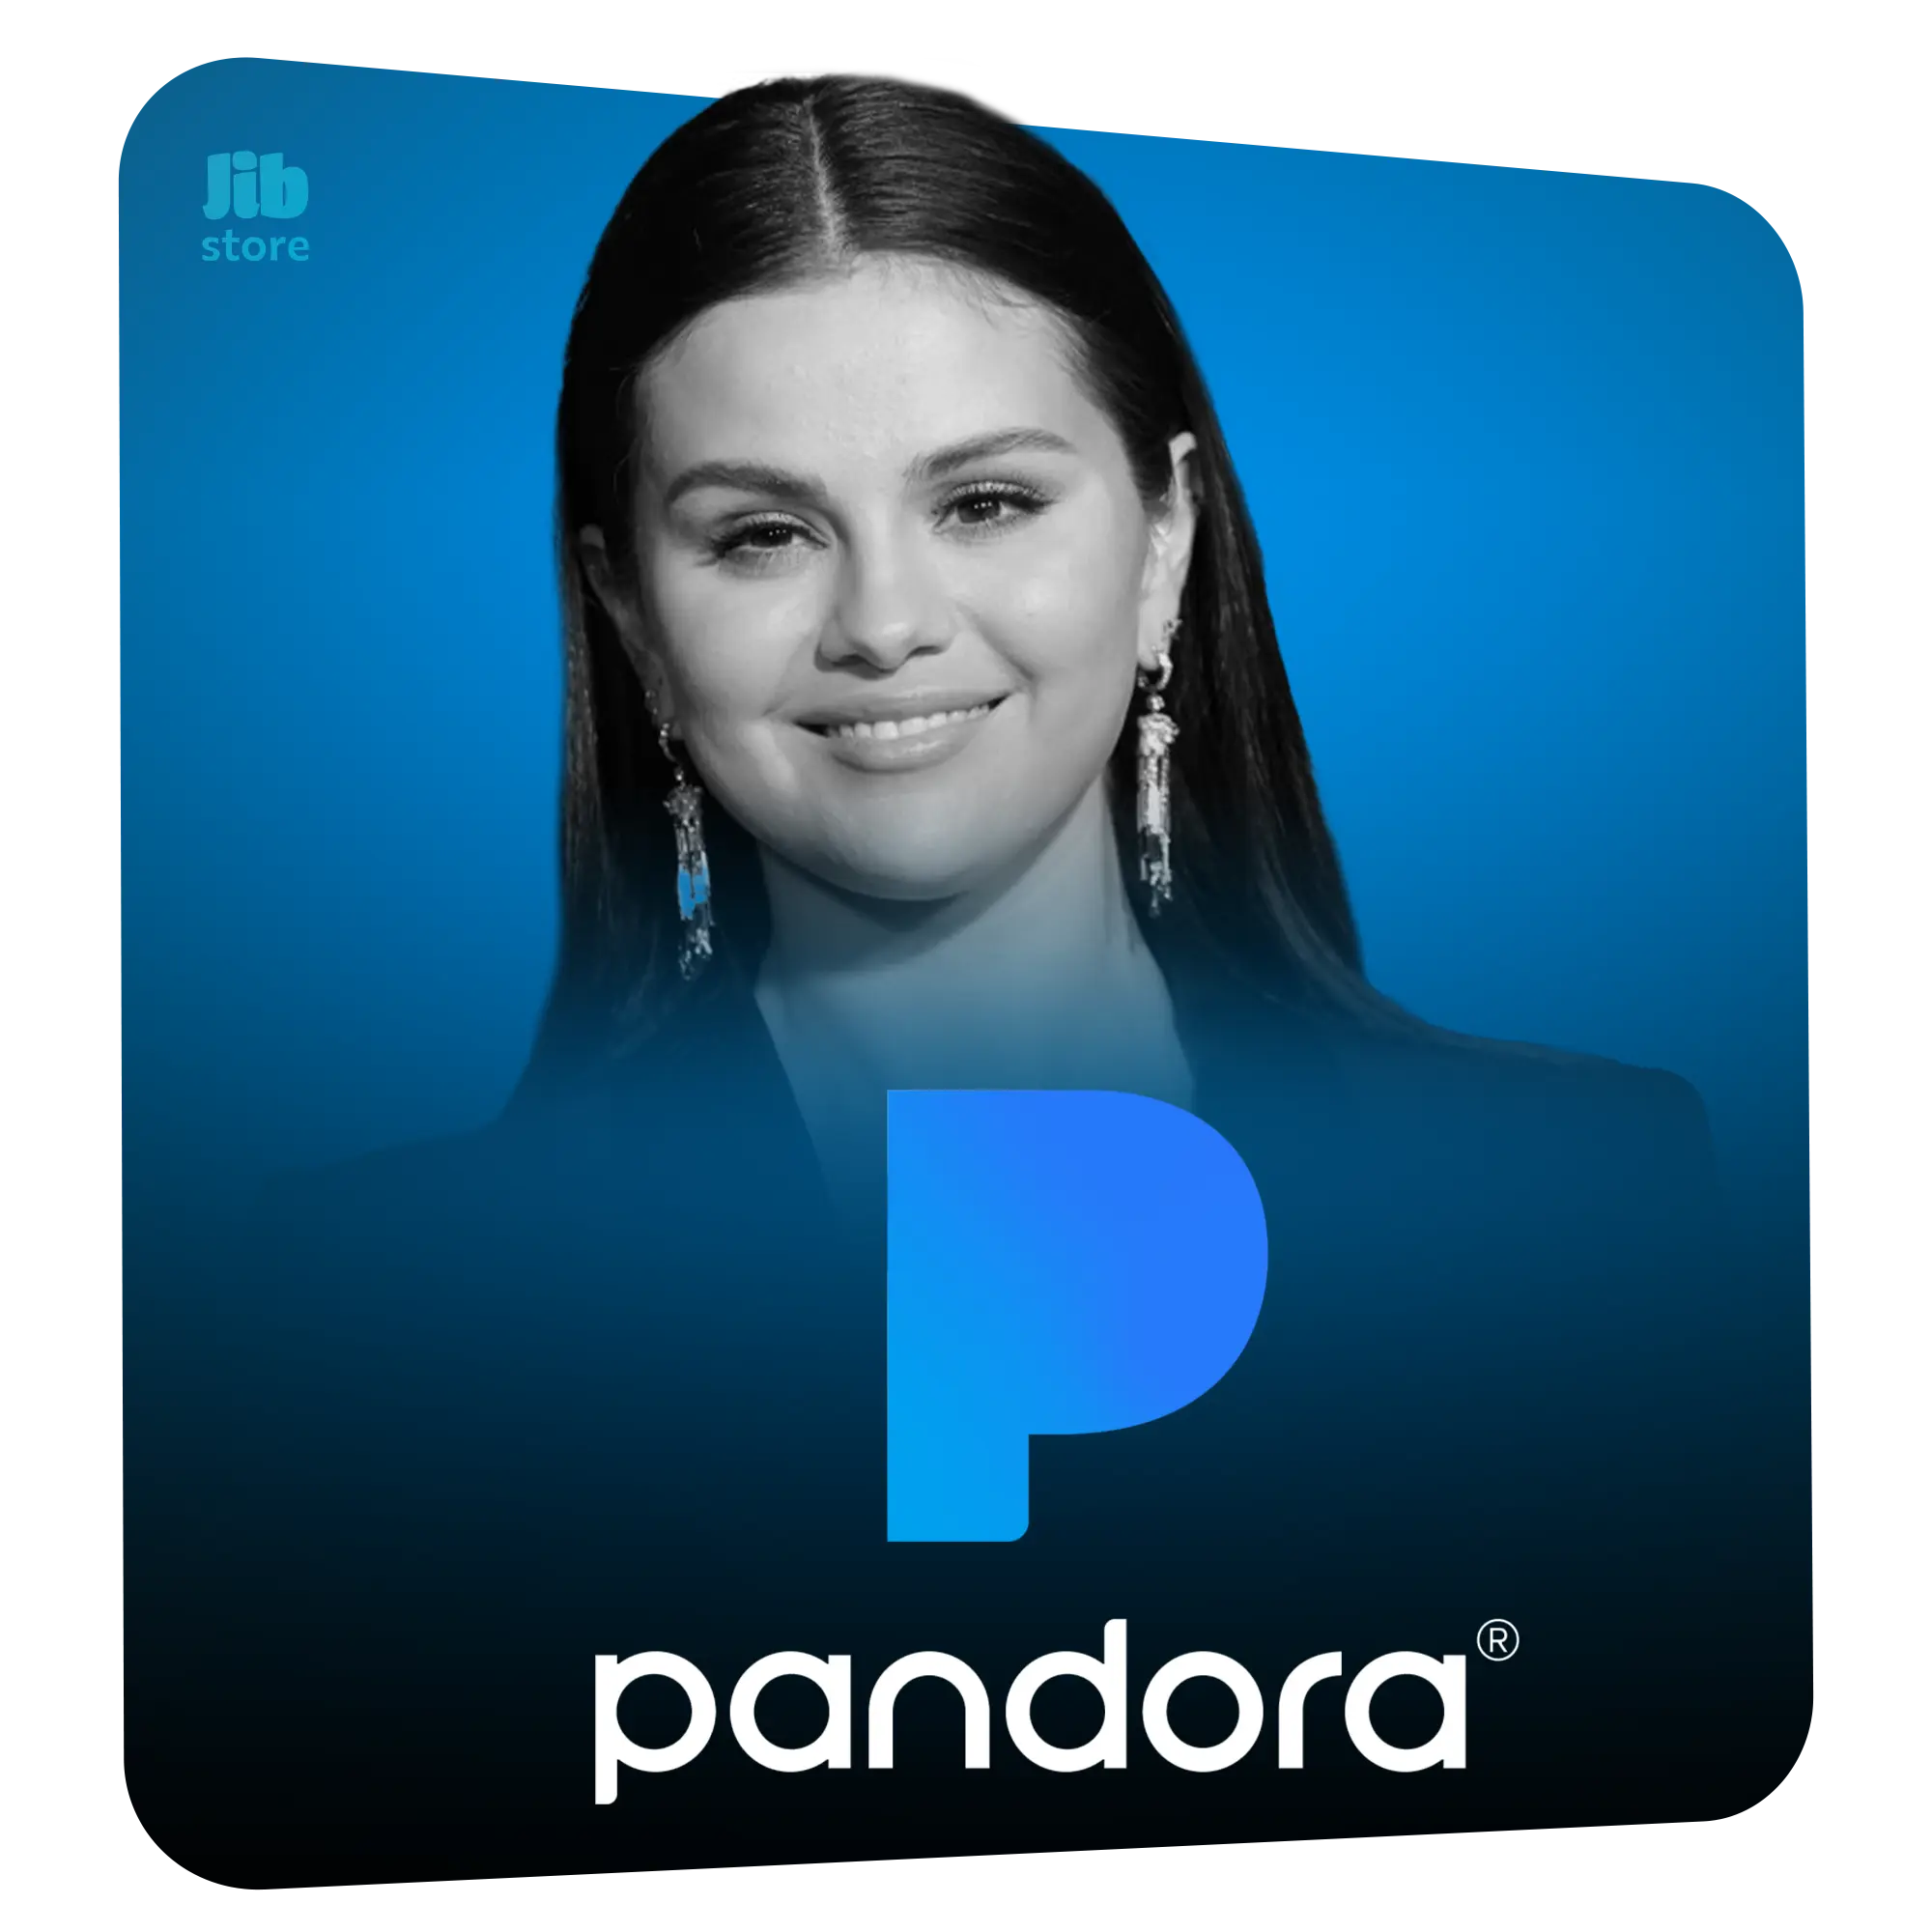 خرید اشتراک Pandora + فعالسازی سرویس پاندورا روی ایمیل شخصی!